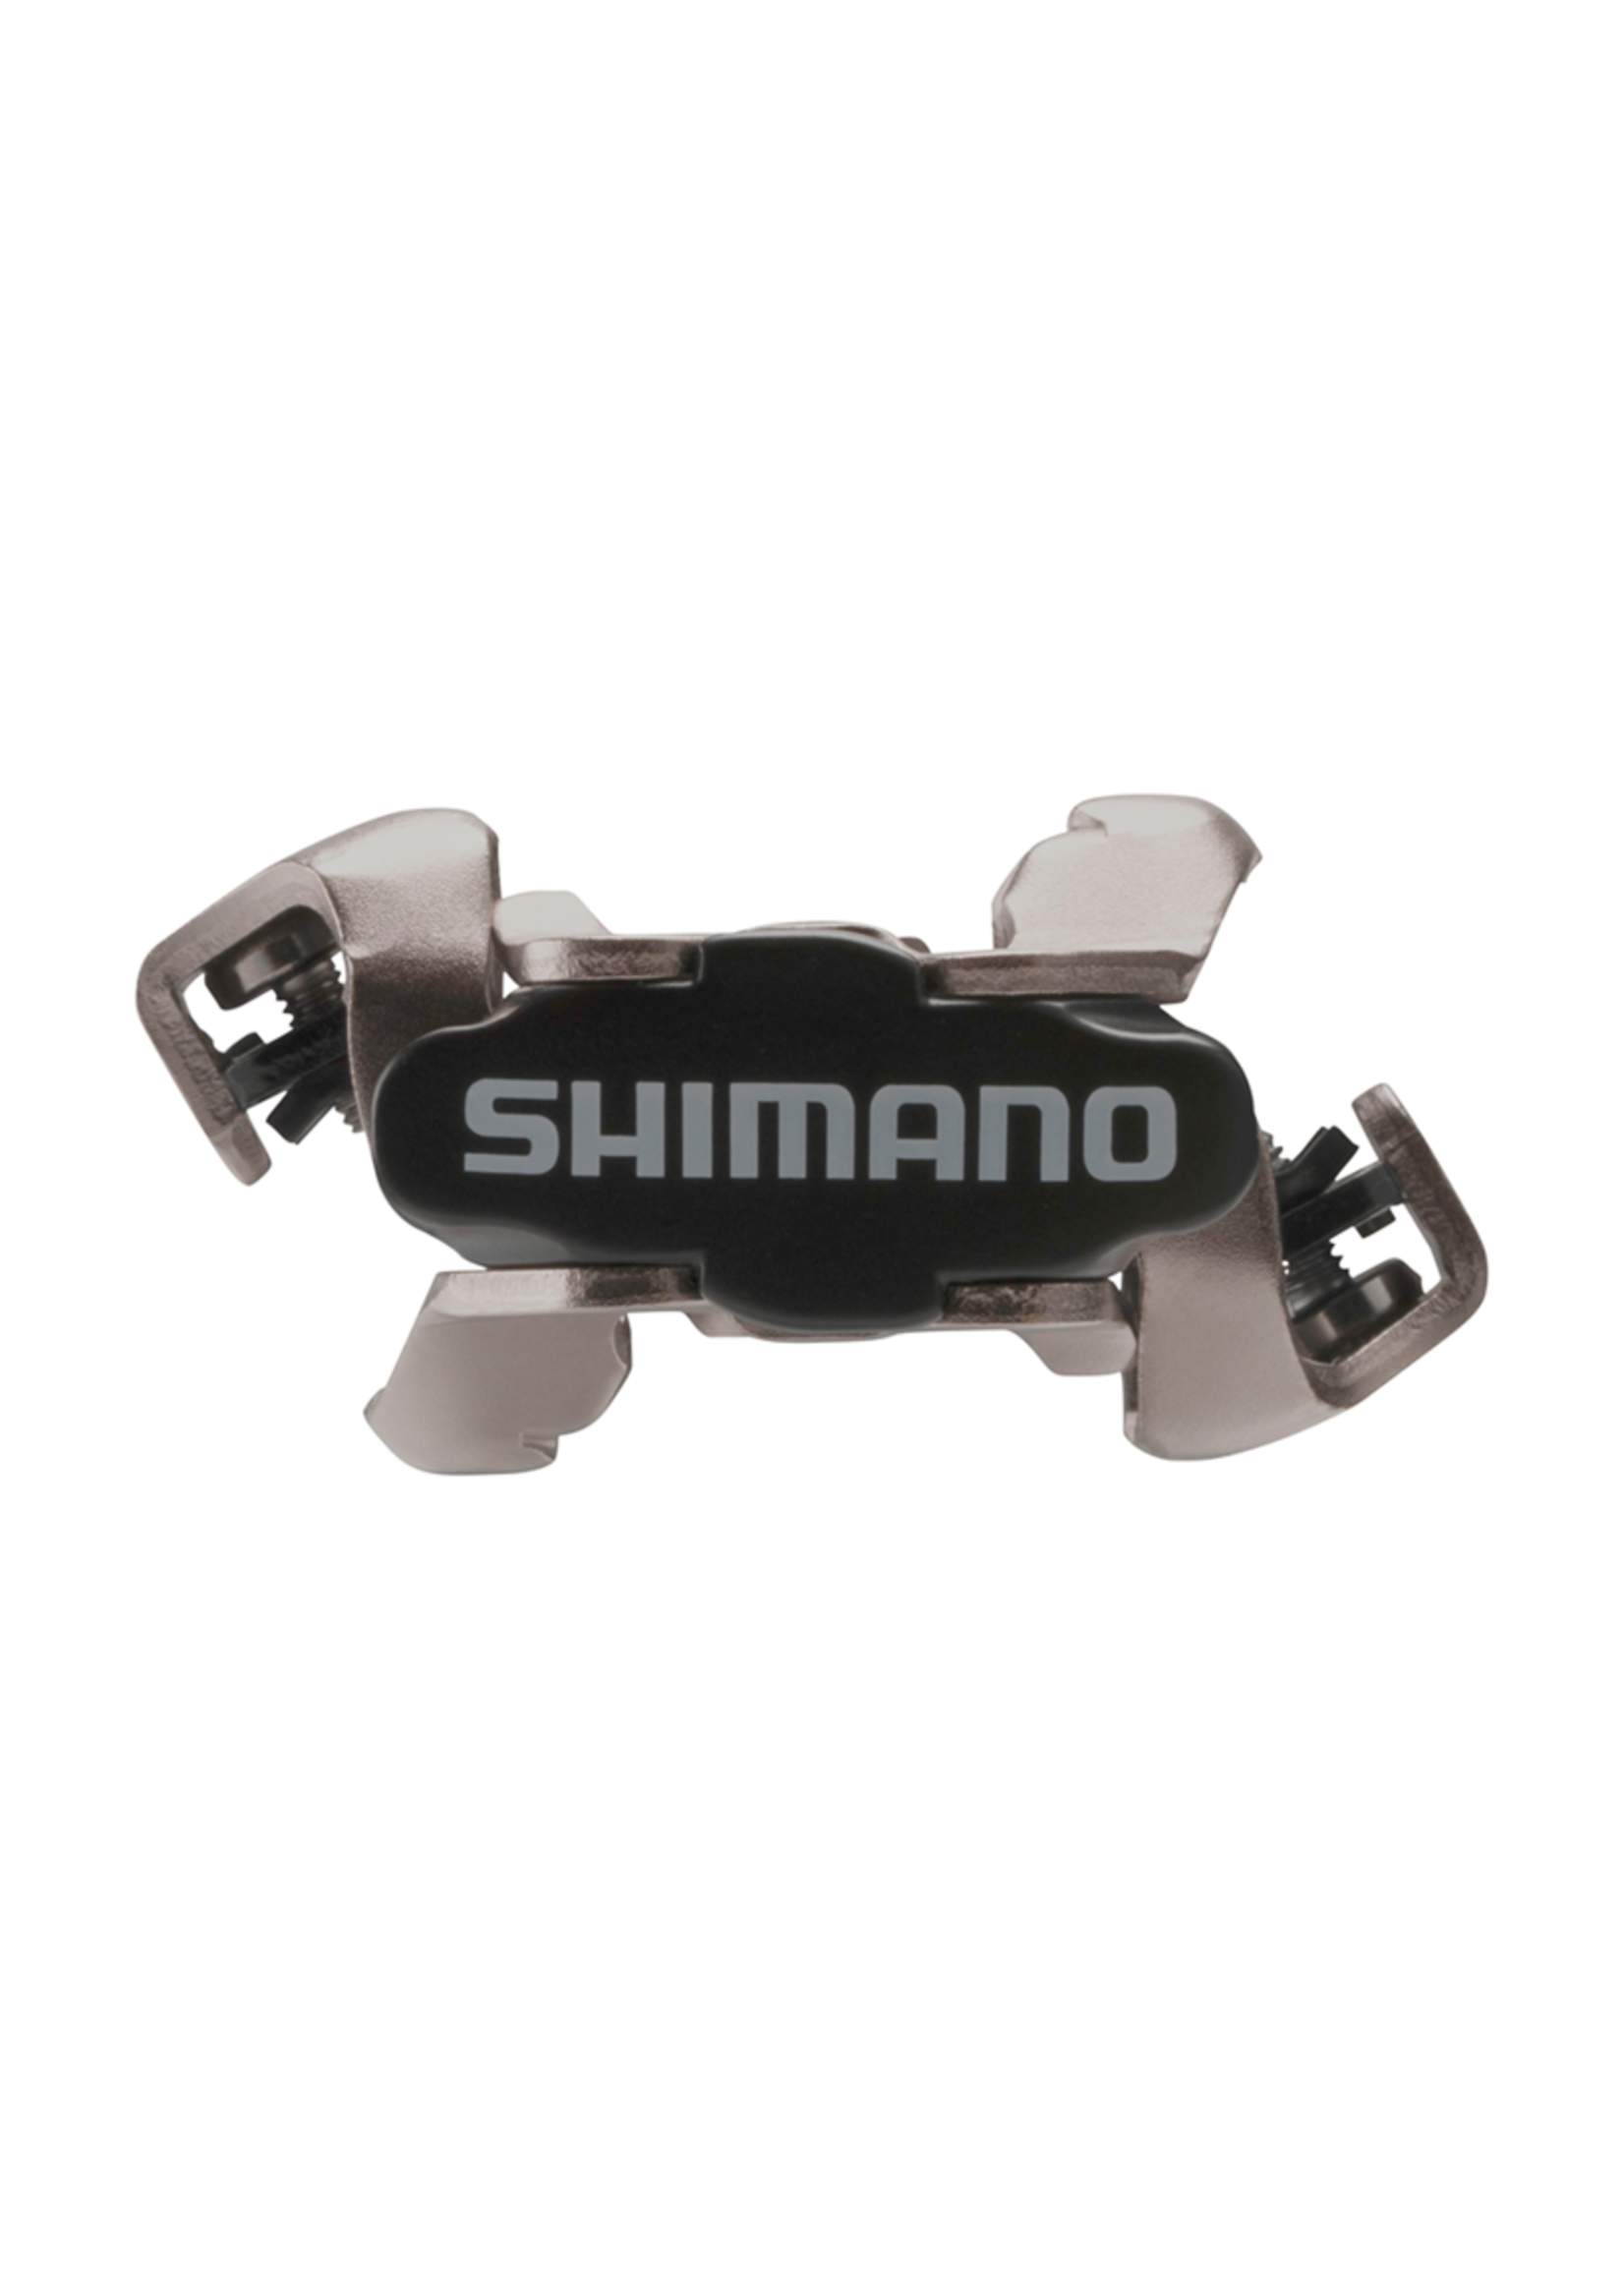 Shimano Pédales Automatiques Shimano SPD PD-M520, Noires